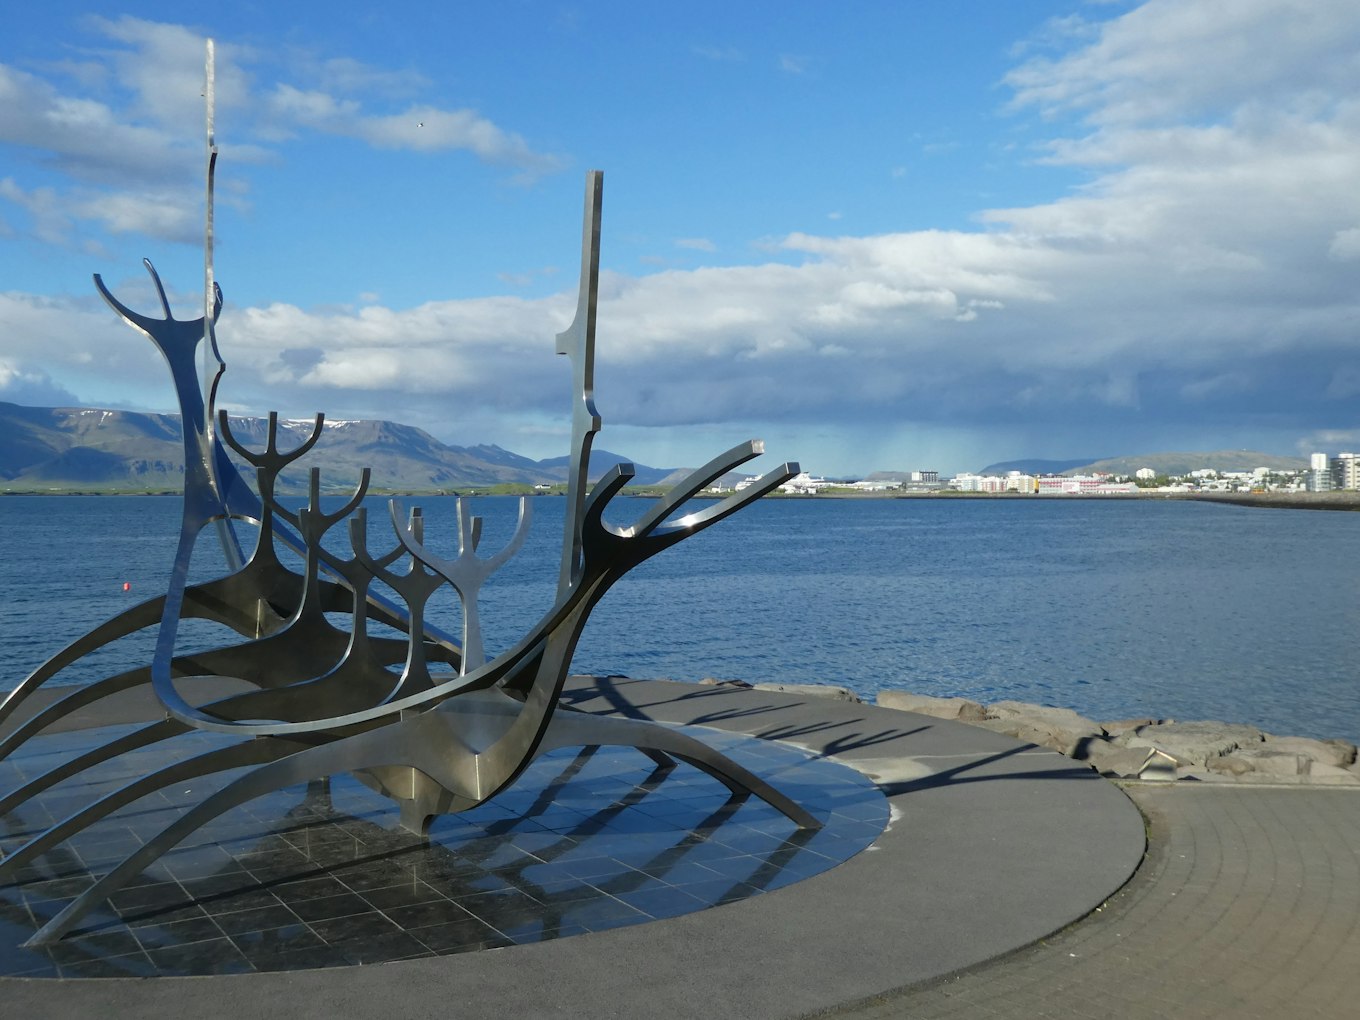 Het prachtige uitzicht vanui de haven in Reykjavik